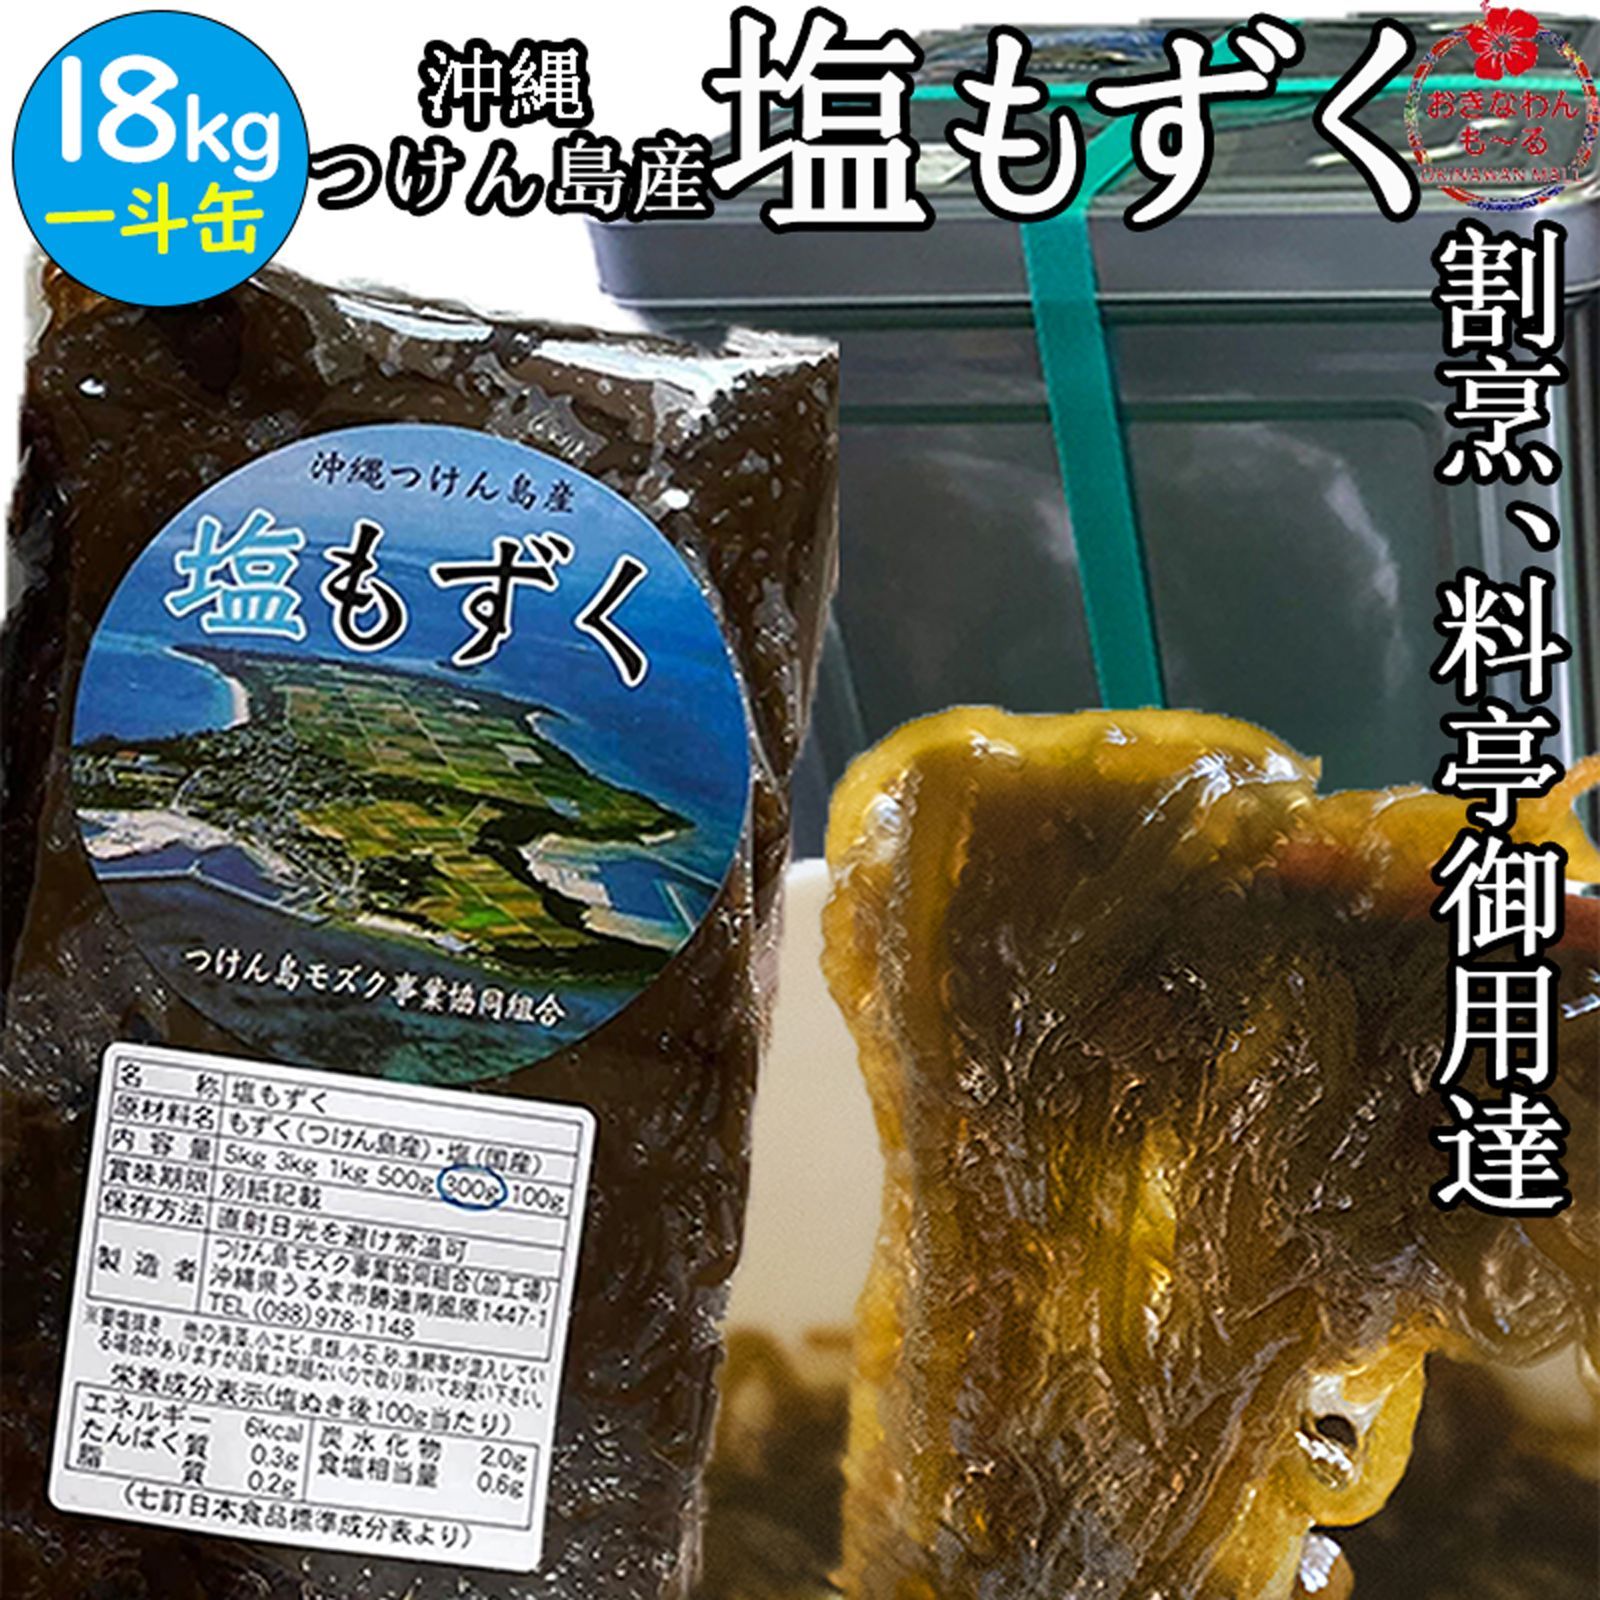 ❖ もずく ❖ 沖縄県産太もずく塩蔵1パック - 野菜